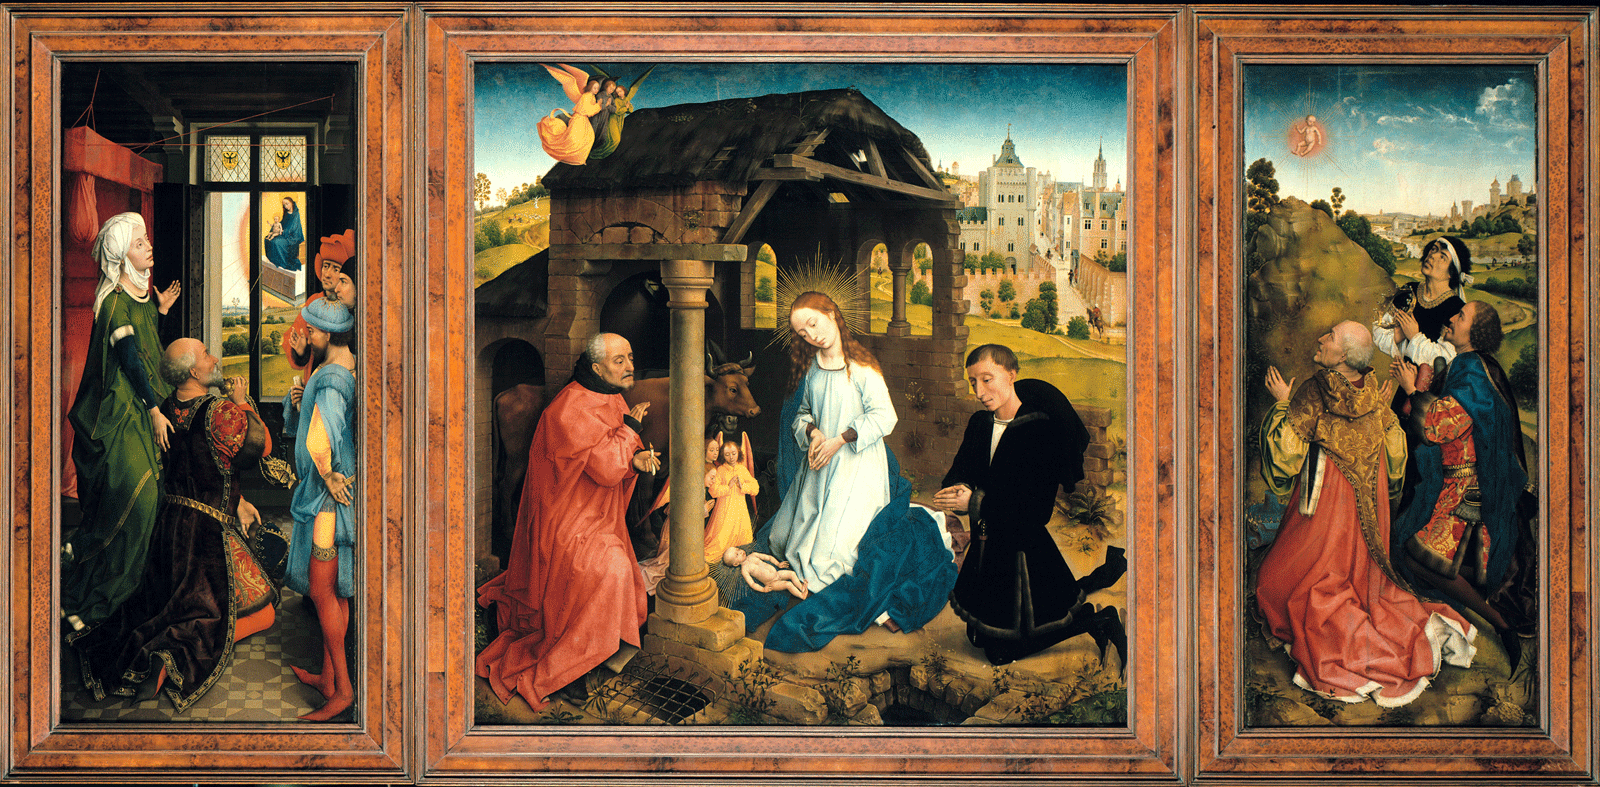 皮特·佈萊德林耶穌誕生祭壇畫 by Rogier van der Weyden - 1445-50 - 91 x 89 cm 